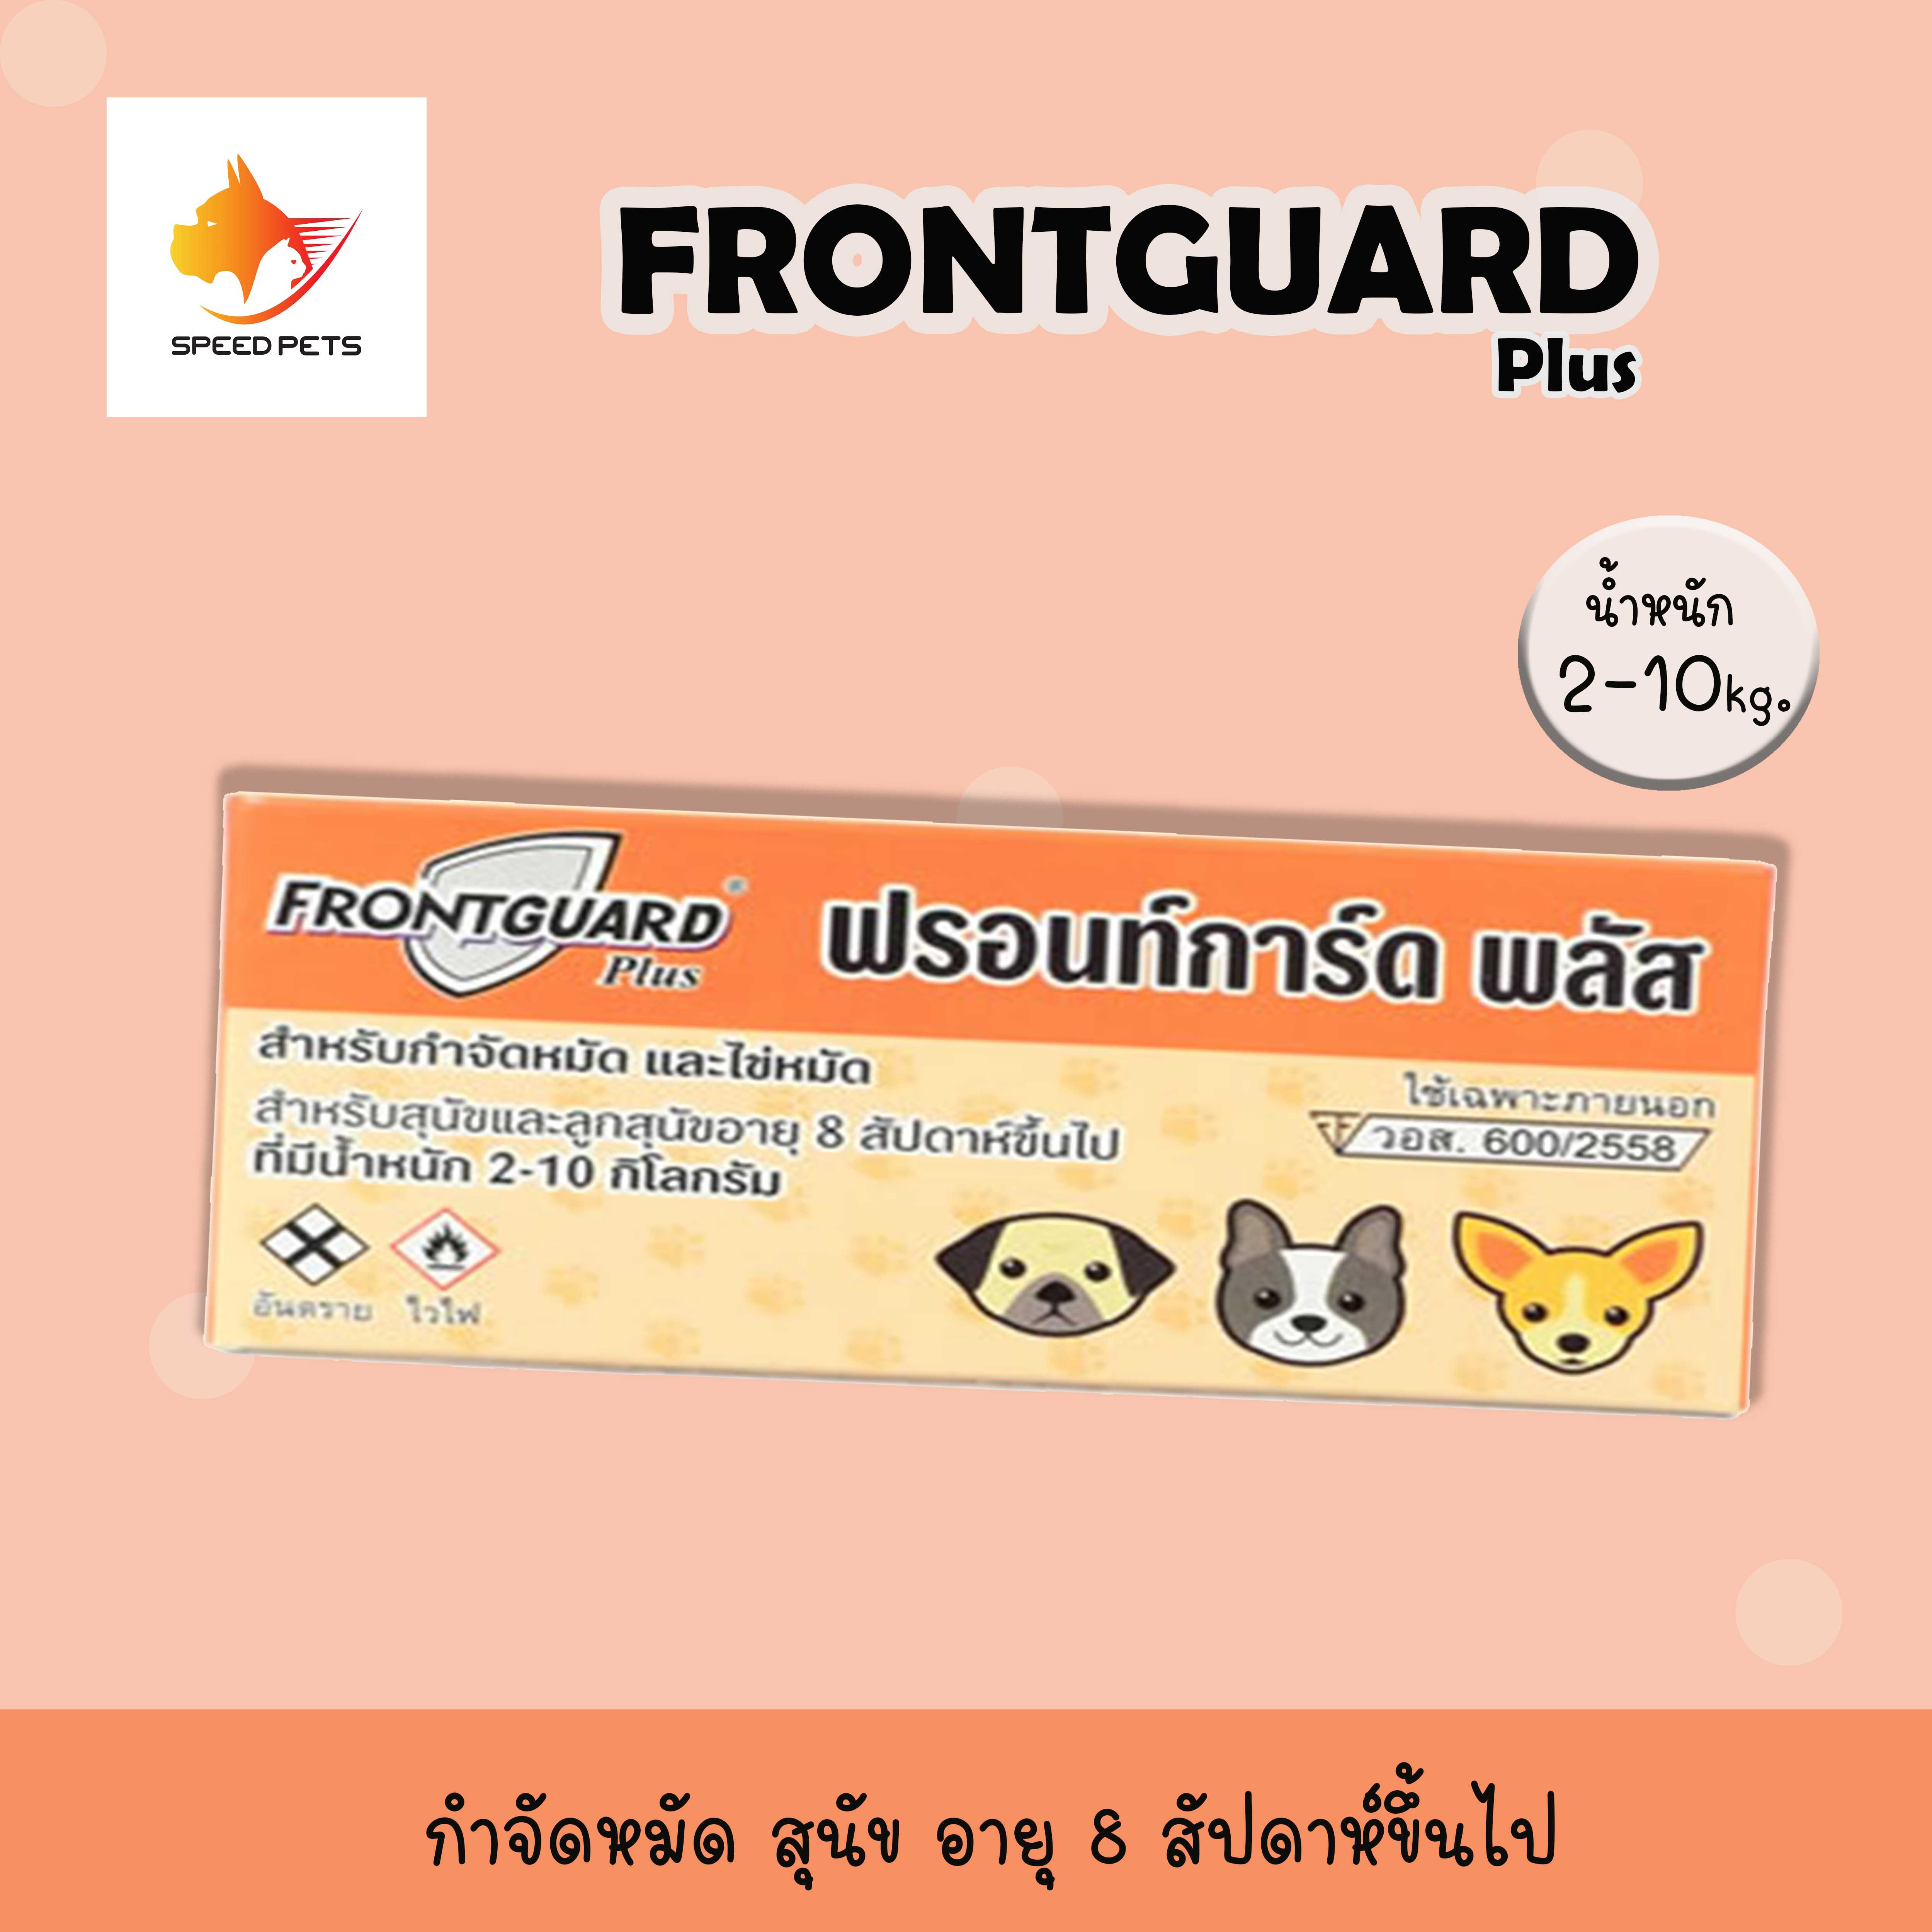 Frontguard Plus dog 2-10kg สำหรับหยด กำจัด เห็บ หมัด สุนัข 2-10 กก. x 1 หลอด